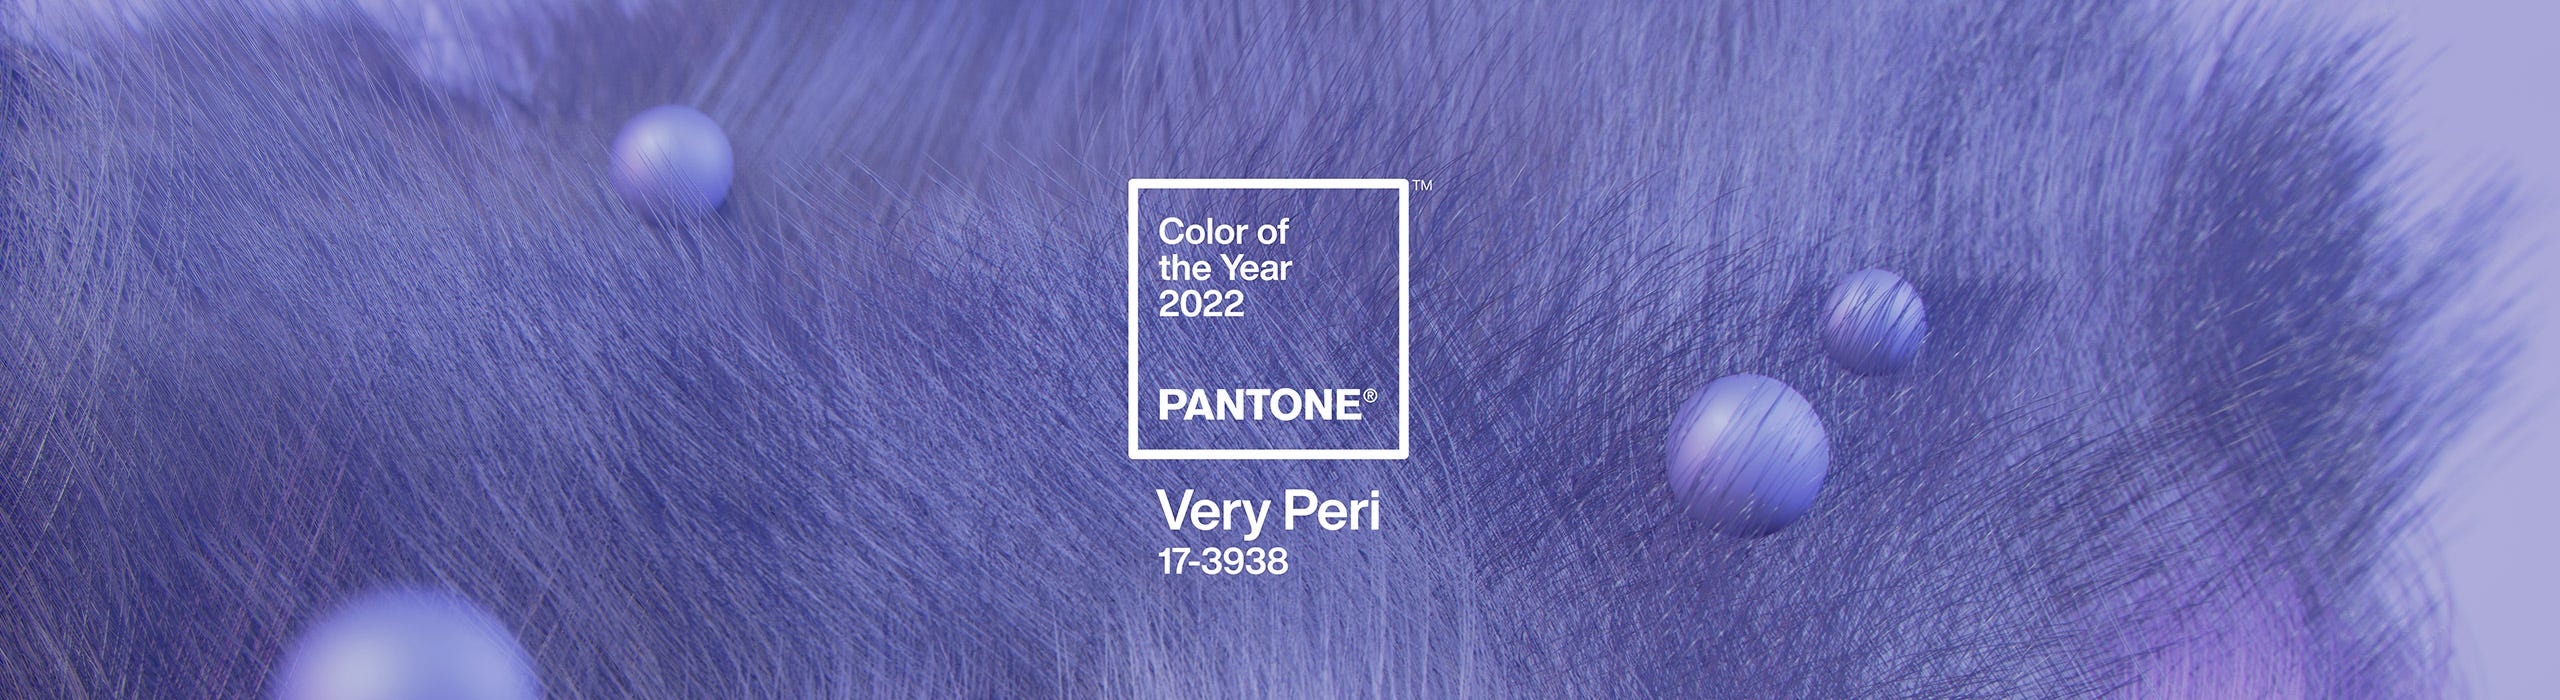 Colore Pantone 2022 Very Peri